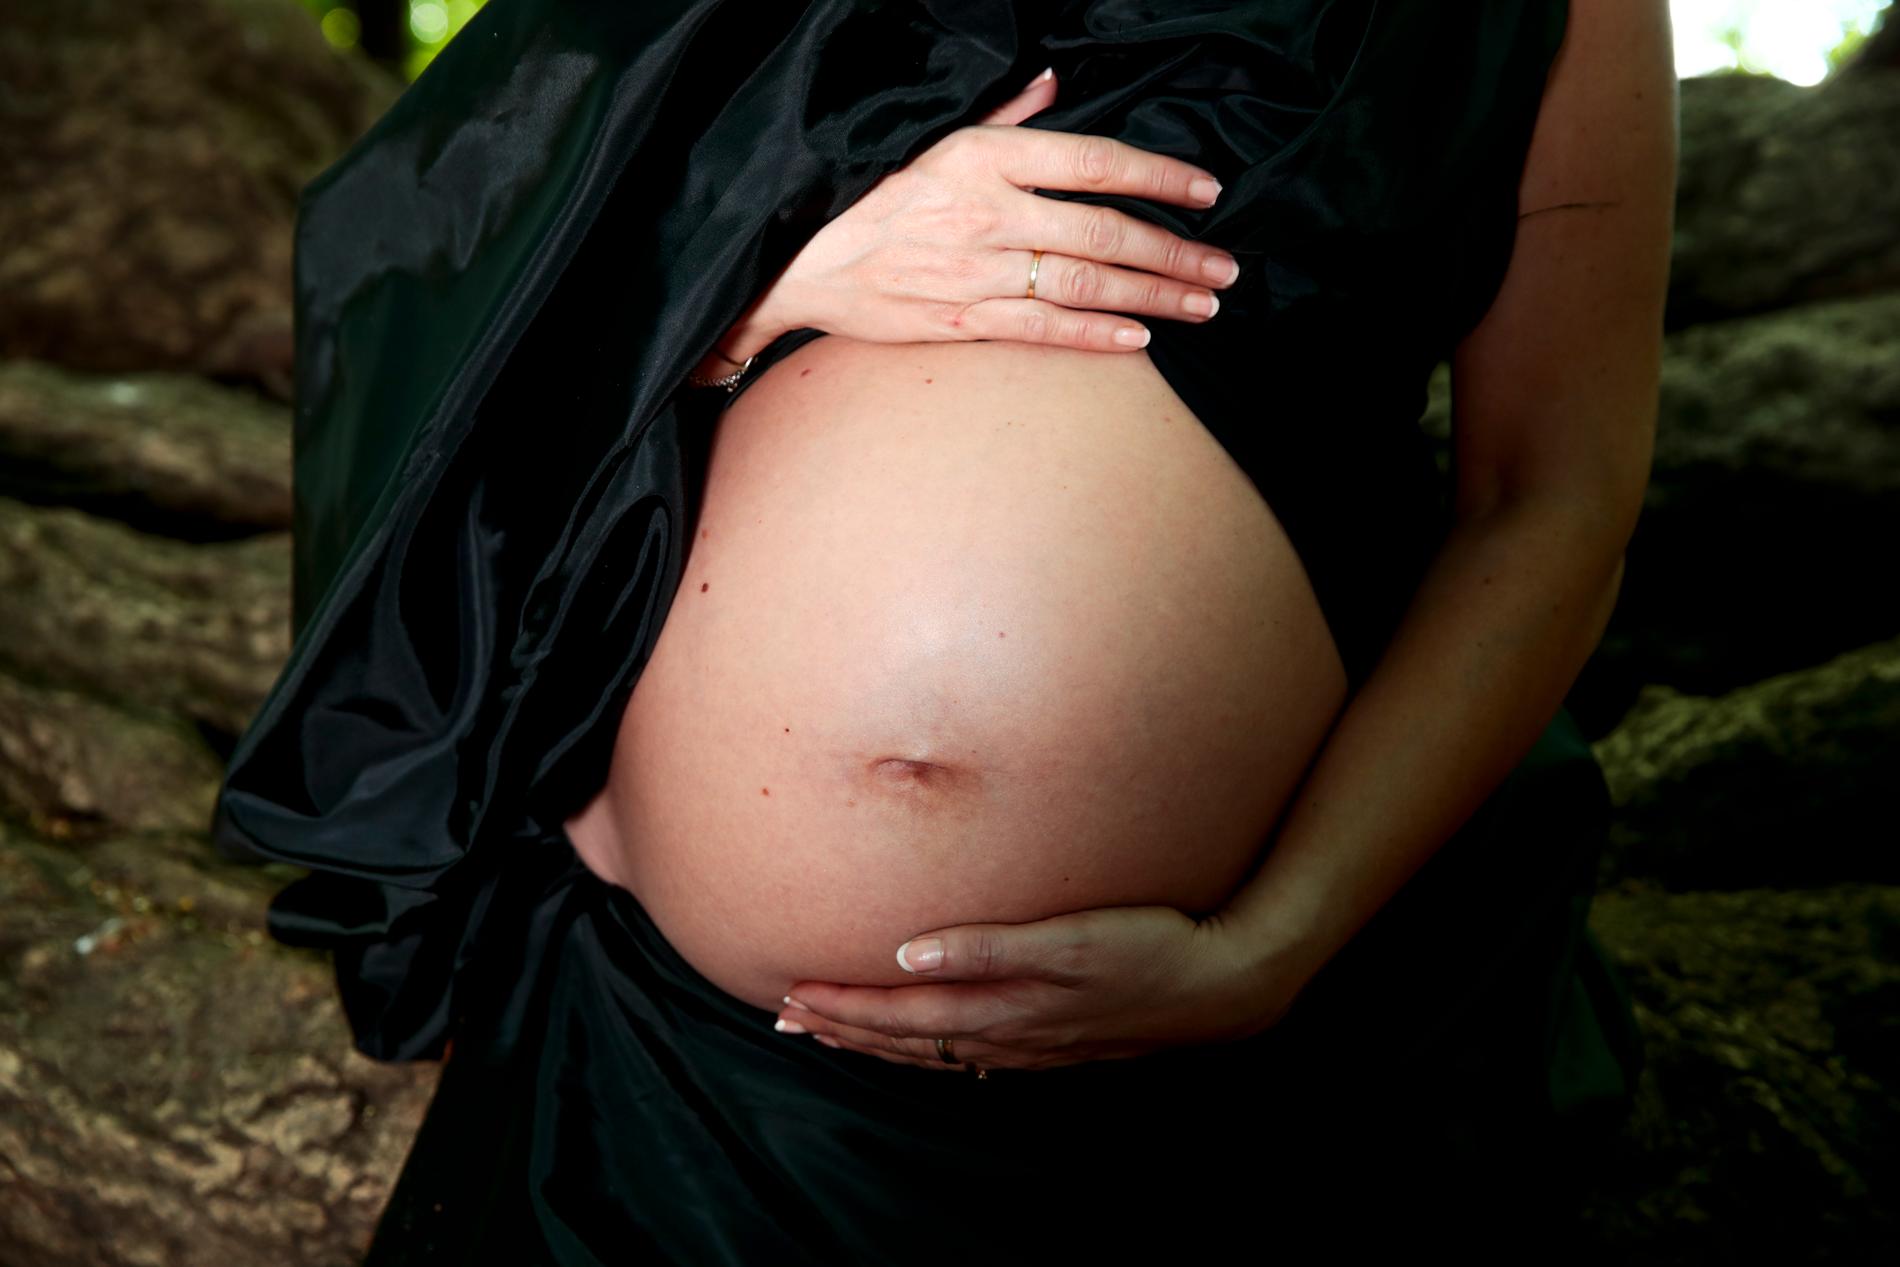 Att vänta med igångsättandet av en förlossning till och med vecka 42 ökar risken för att barnet dör, jämfört med om förlossningen sätts igång redan efter 41 veckor, visar ny forskning.